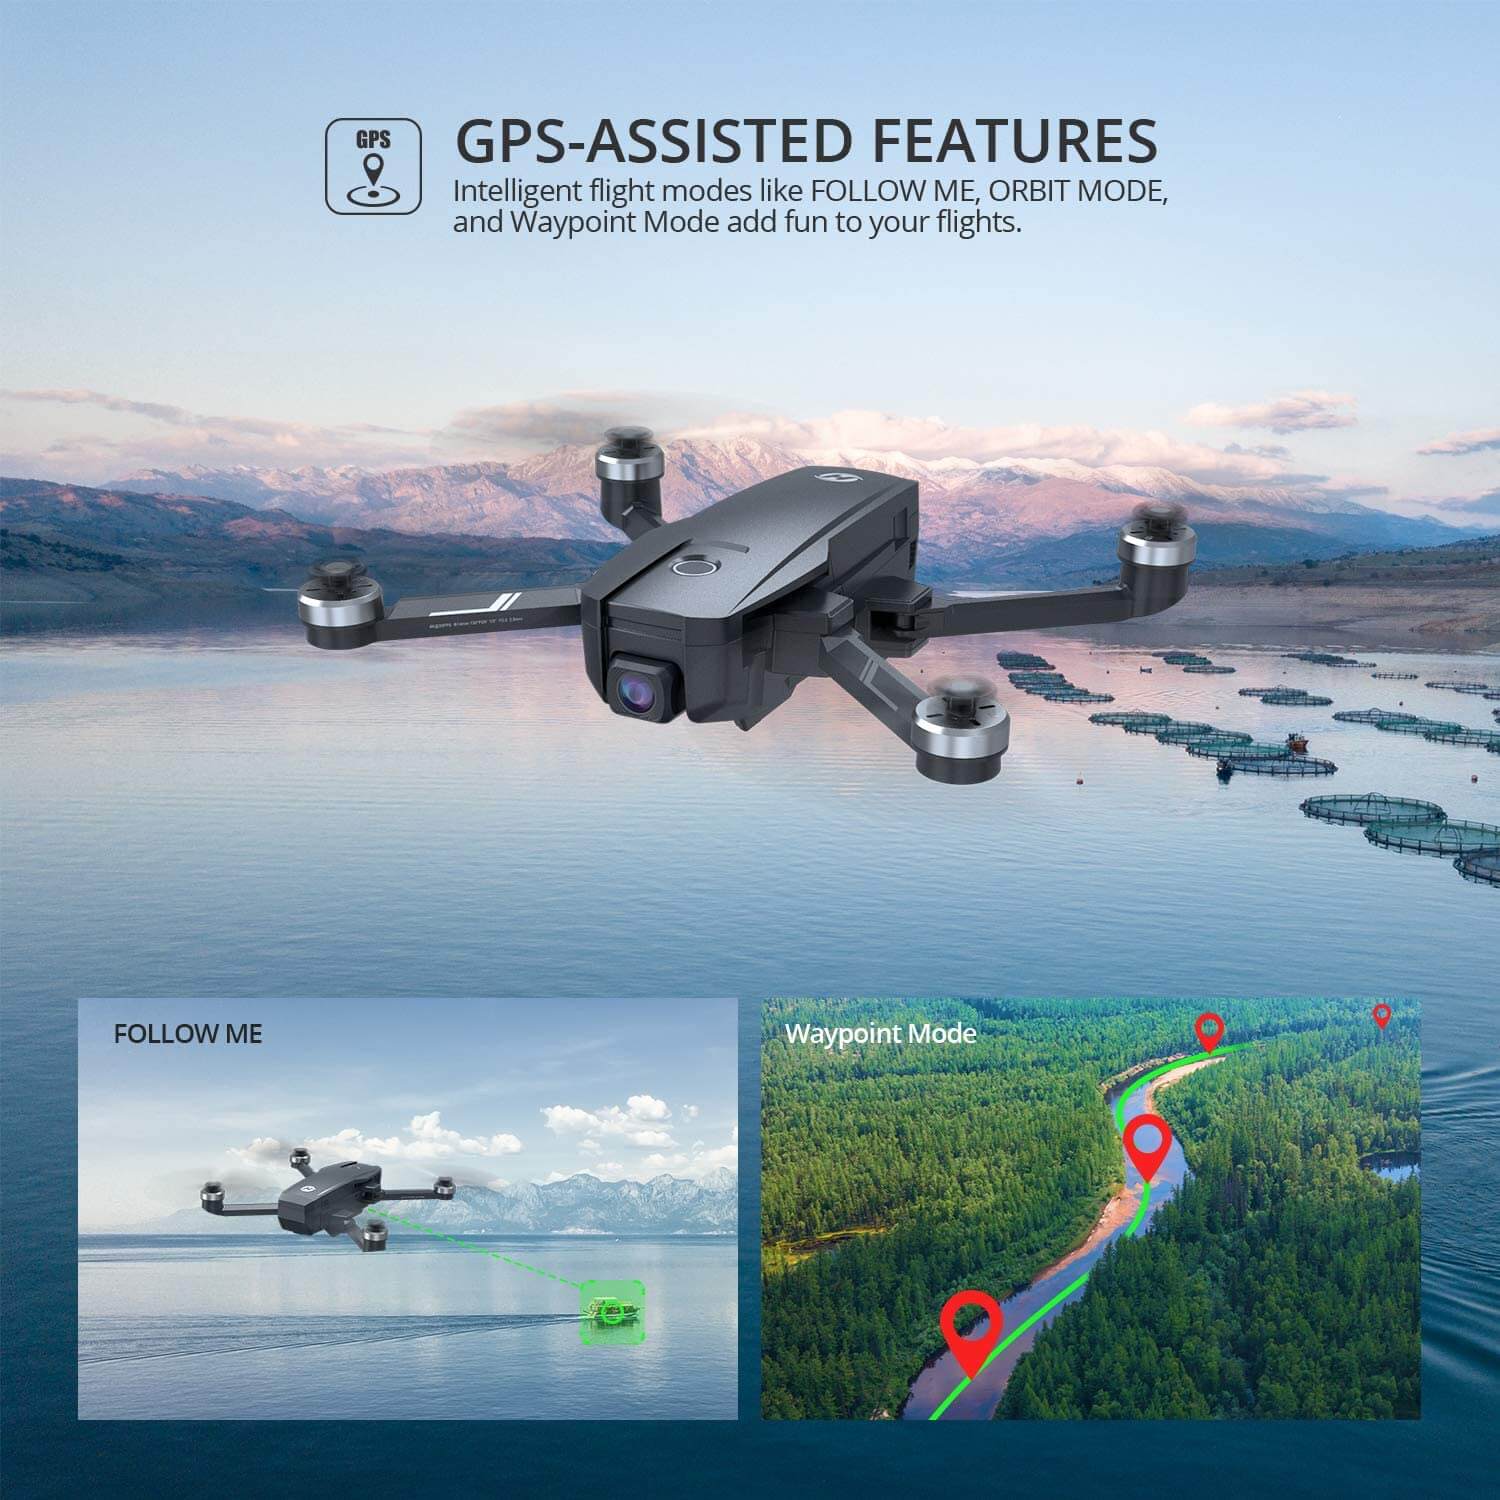 Holy Stone HS360S GPS Drone avec Caméra 4K pour Adultes Débutants